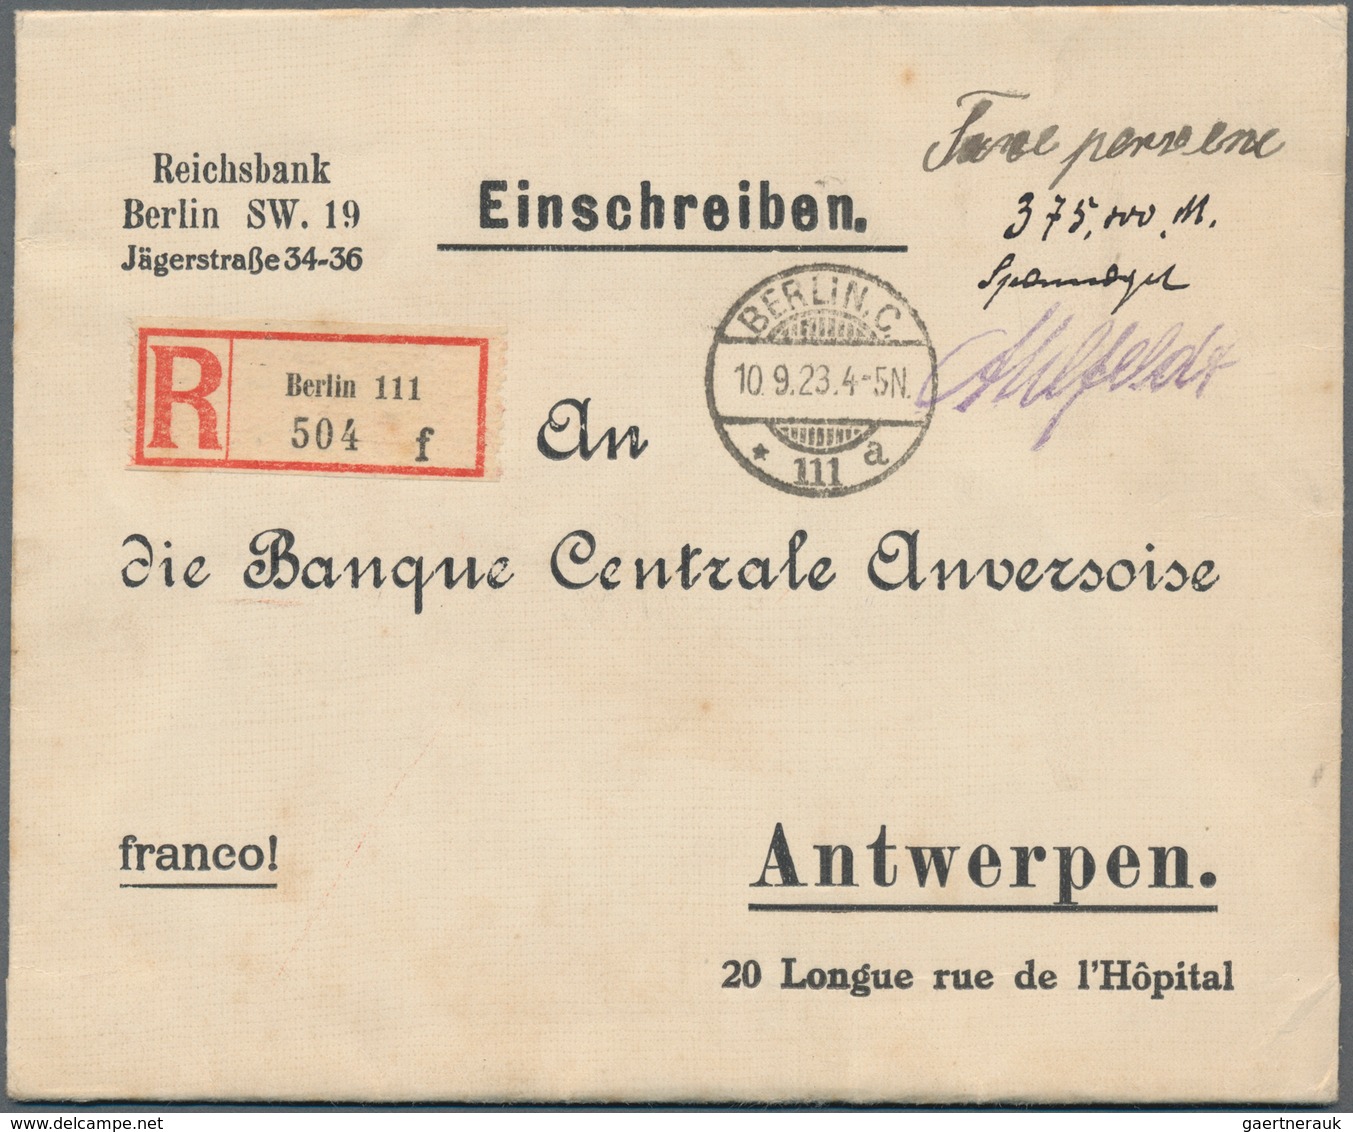 Deutsches Reich - Inflation: 1923, GEBÜHR BEZAHLT, außergewöhnliche Sammlung von 81 Bedarfsbelegen m